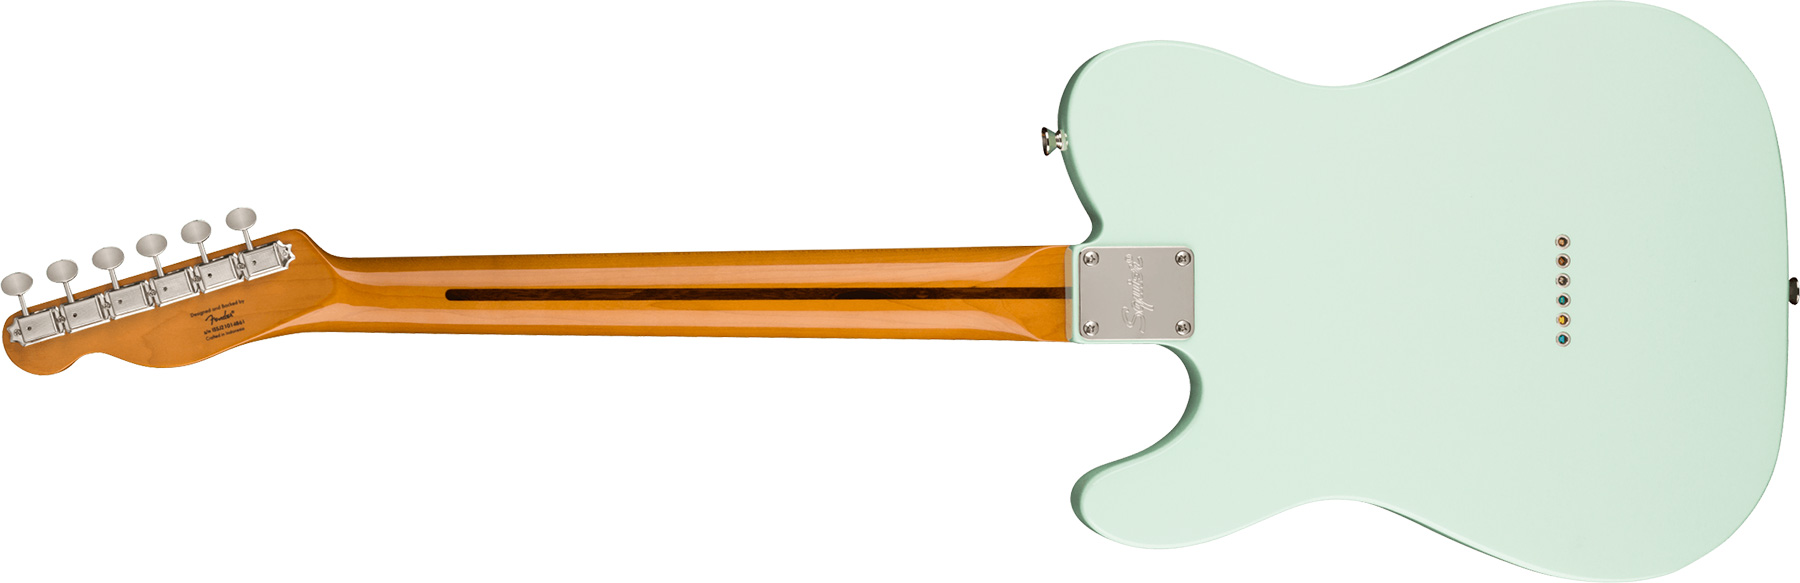 Squier Tele '60s Thinline Gold Anodized Pickguard Classic Vibe Fsr 2s Ht Mn - Sonic Blue - Guitarra eléctrica con forma de tel - Variation 1